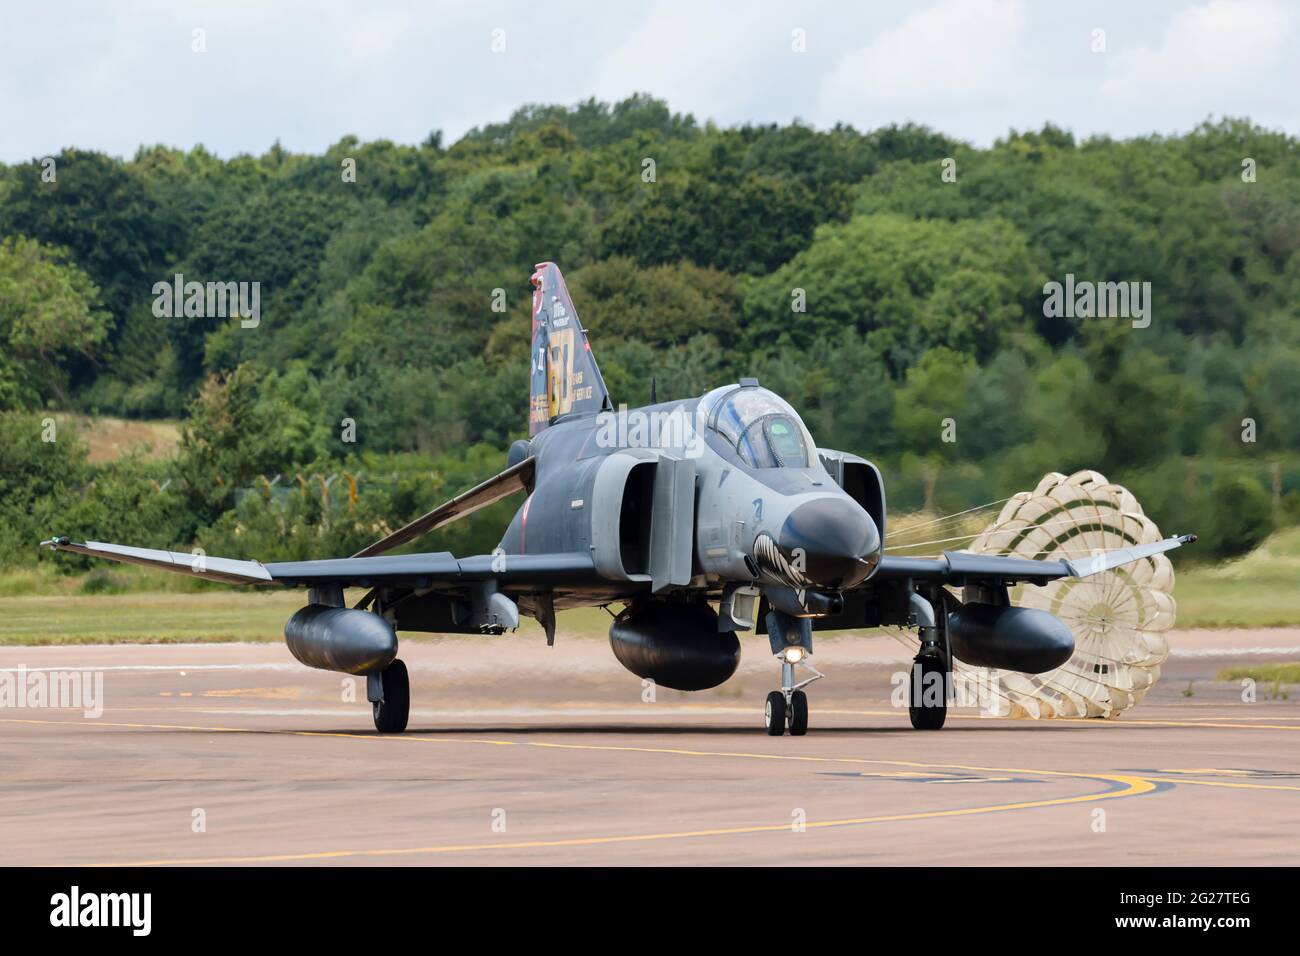 Una forza aerea turca F-4E Phantom II taxi dopo l'atterraggio. Foto Stock